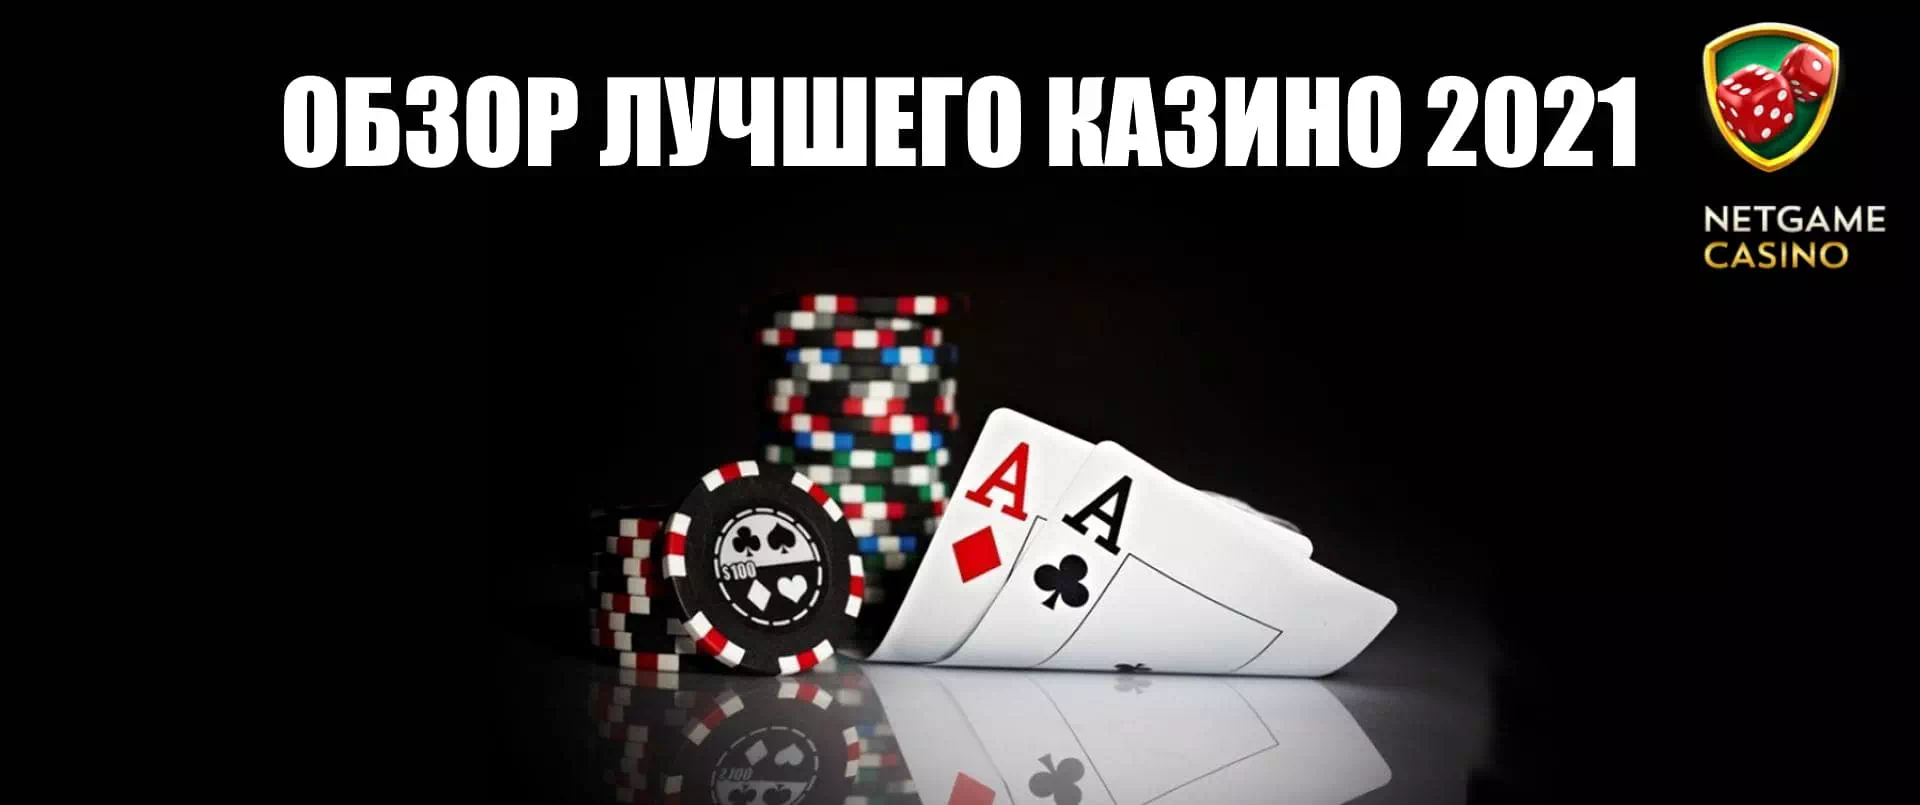 Netgame Casino официальный сайт казино с лучшими бонусами